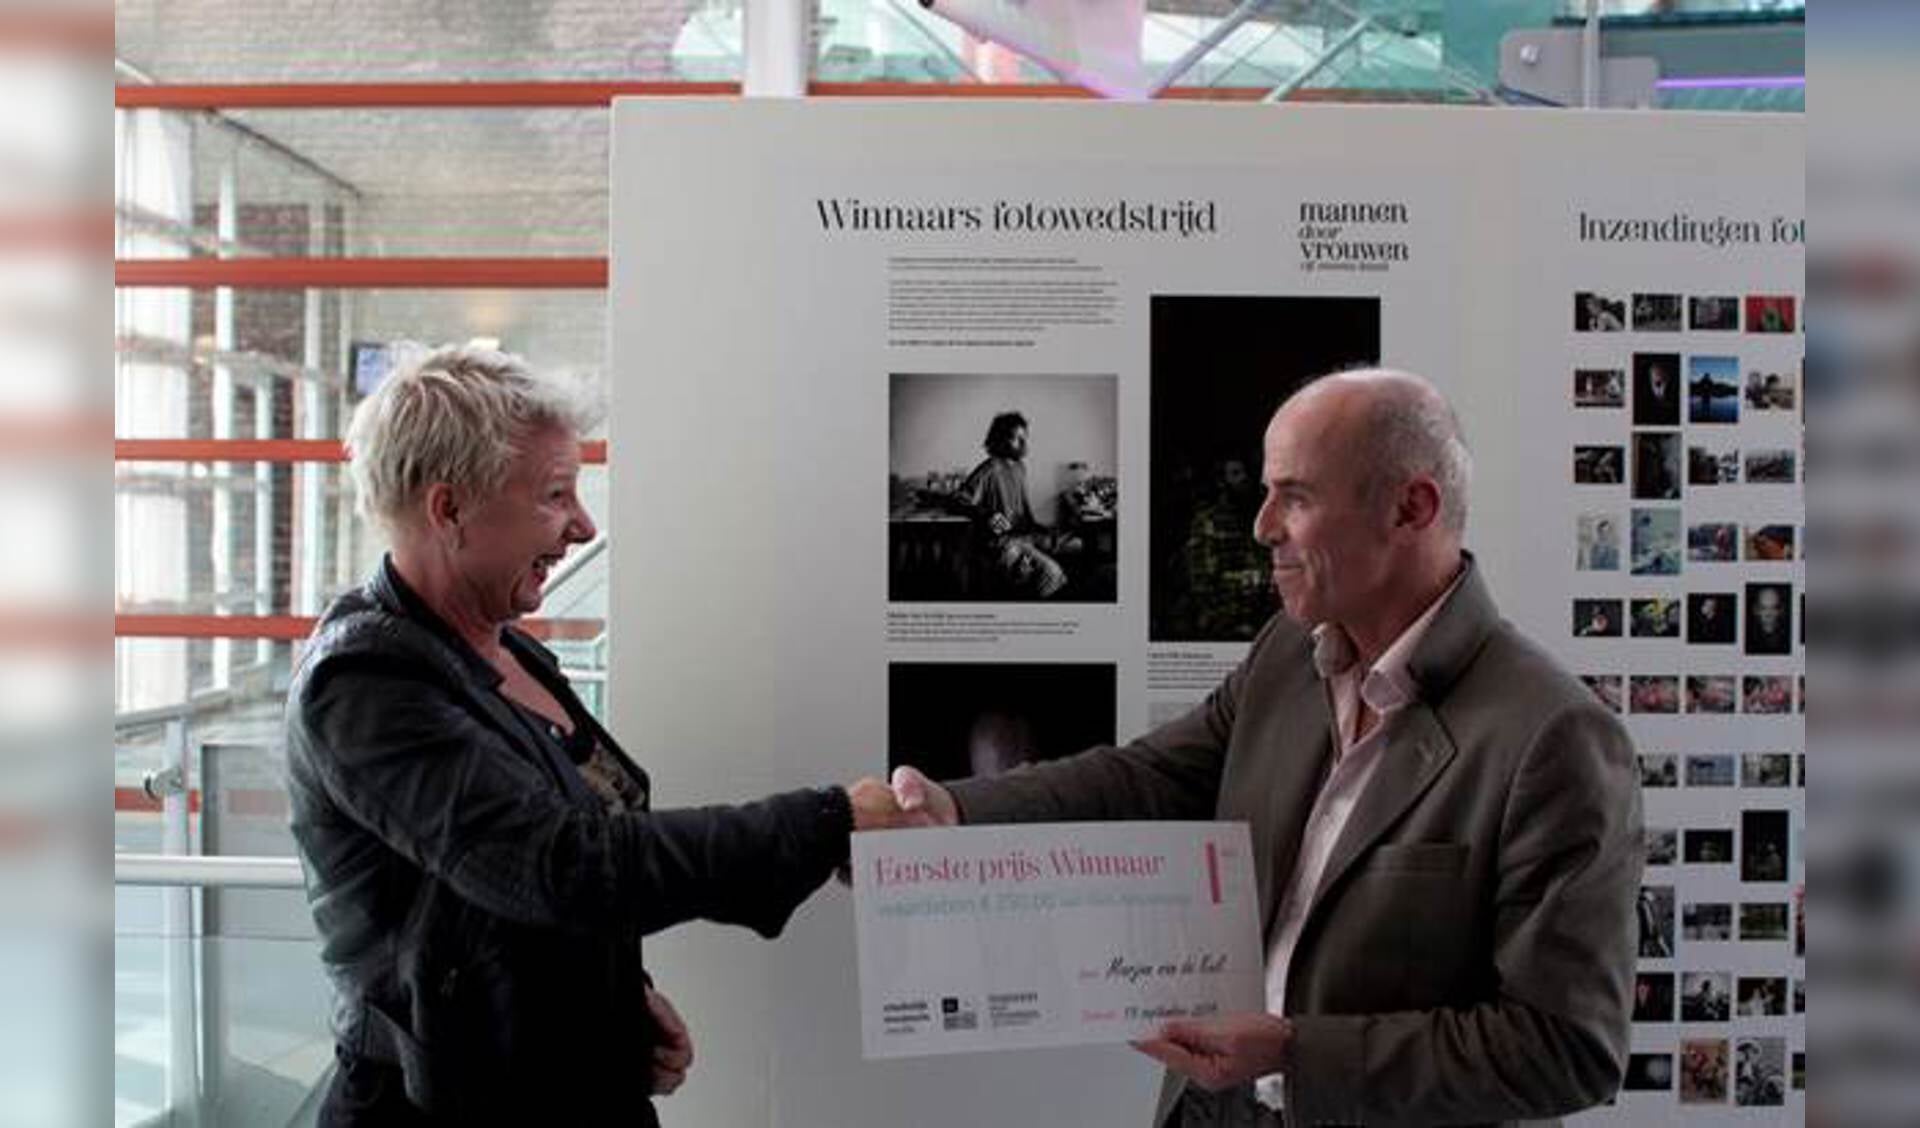 Marjan Kuil wint fotowedstrijd ?Mannen door vrouwen'